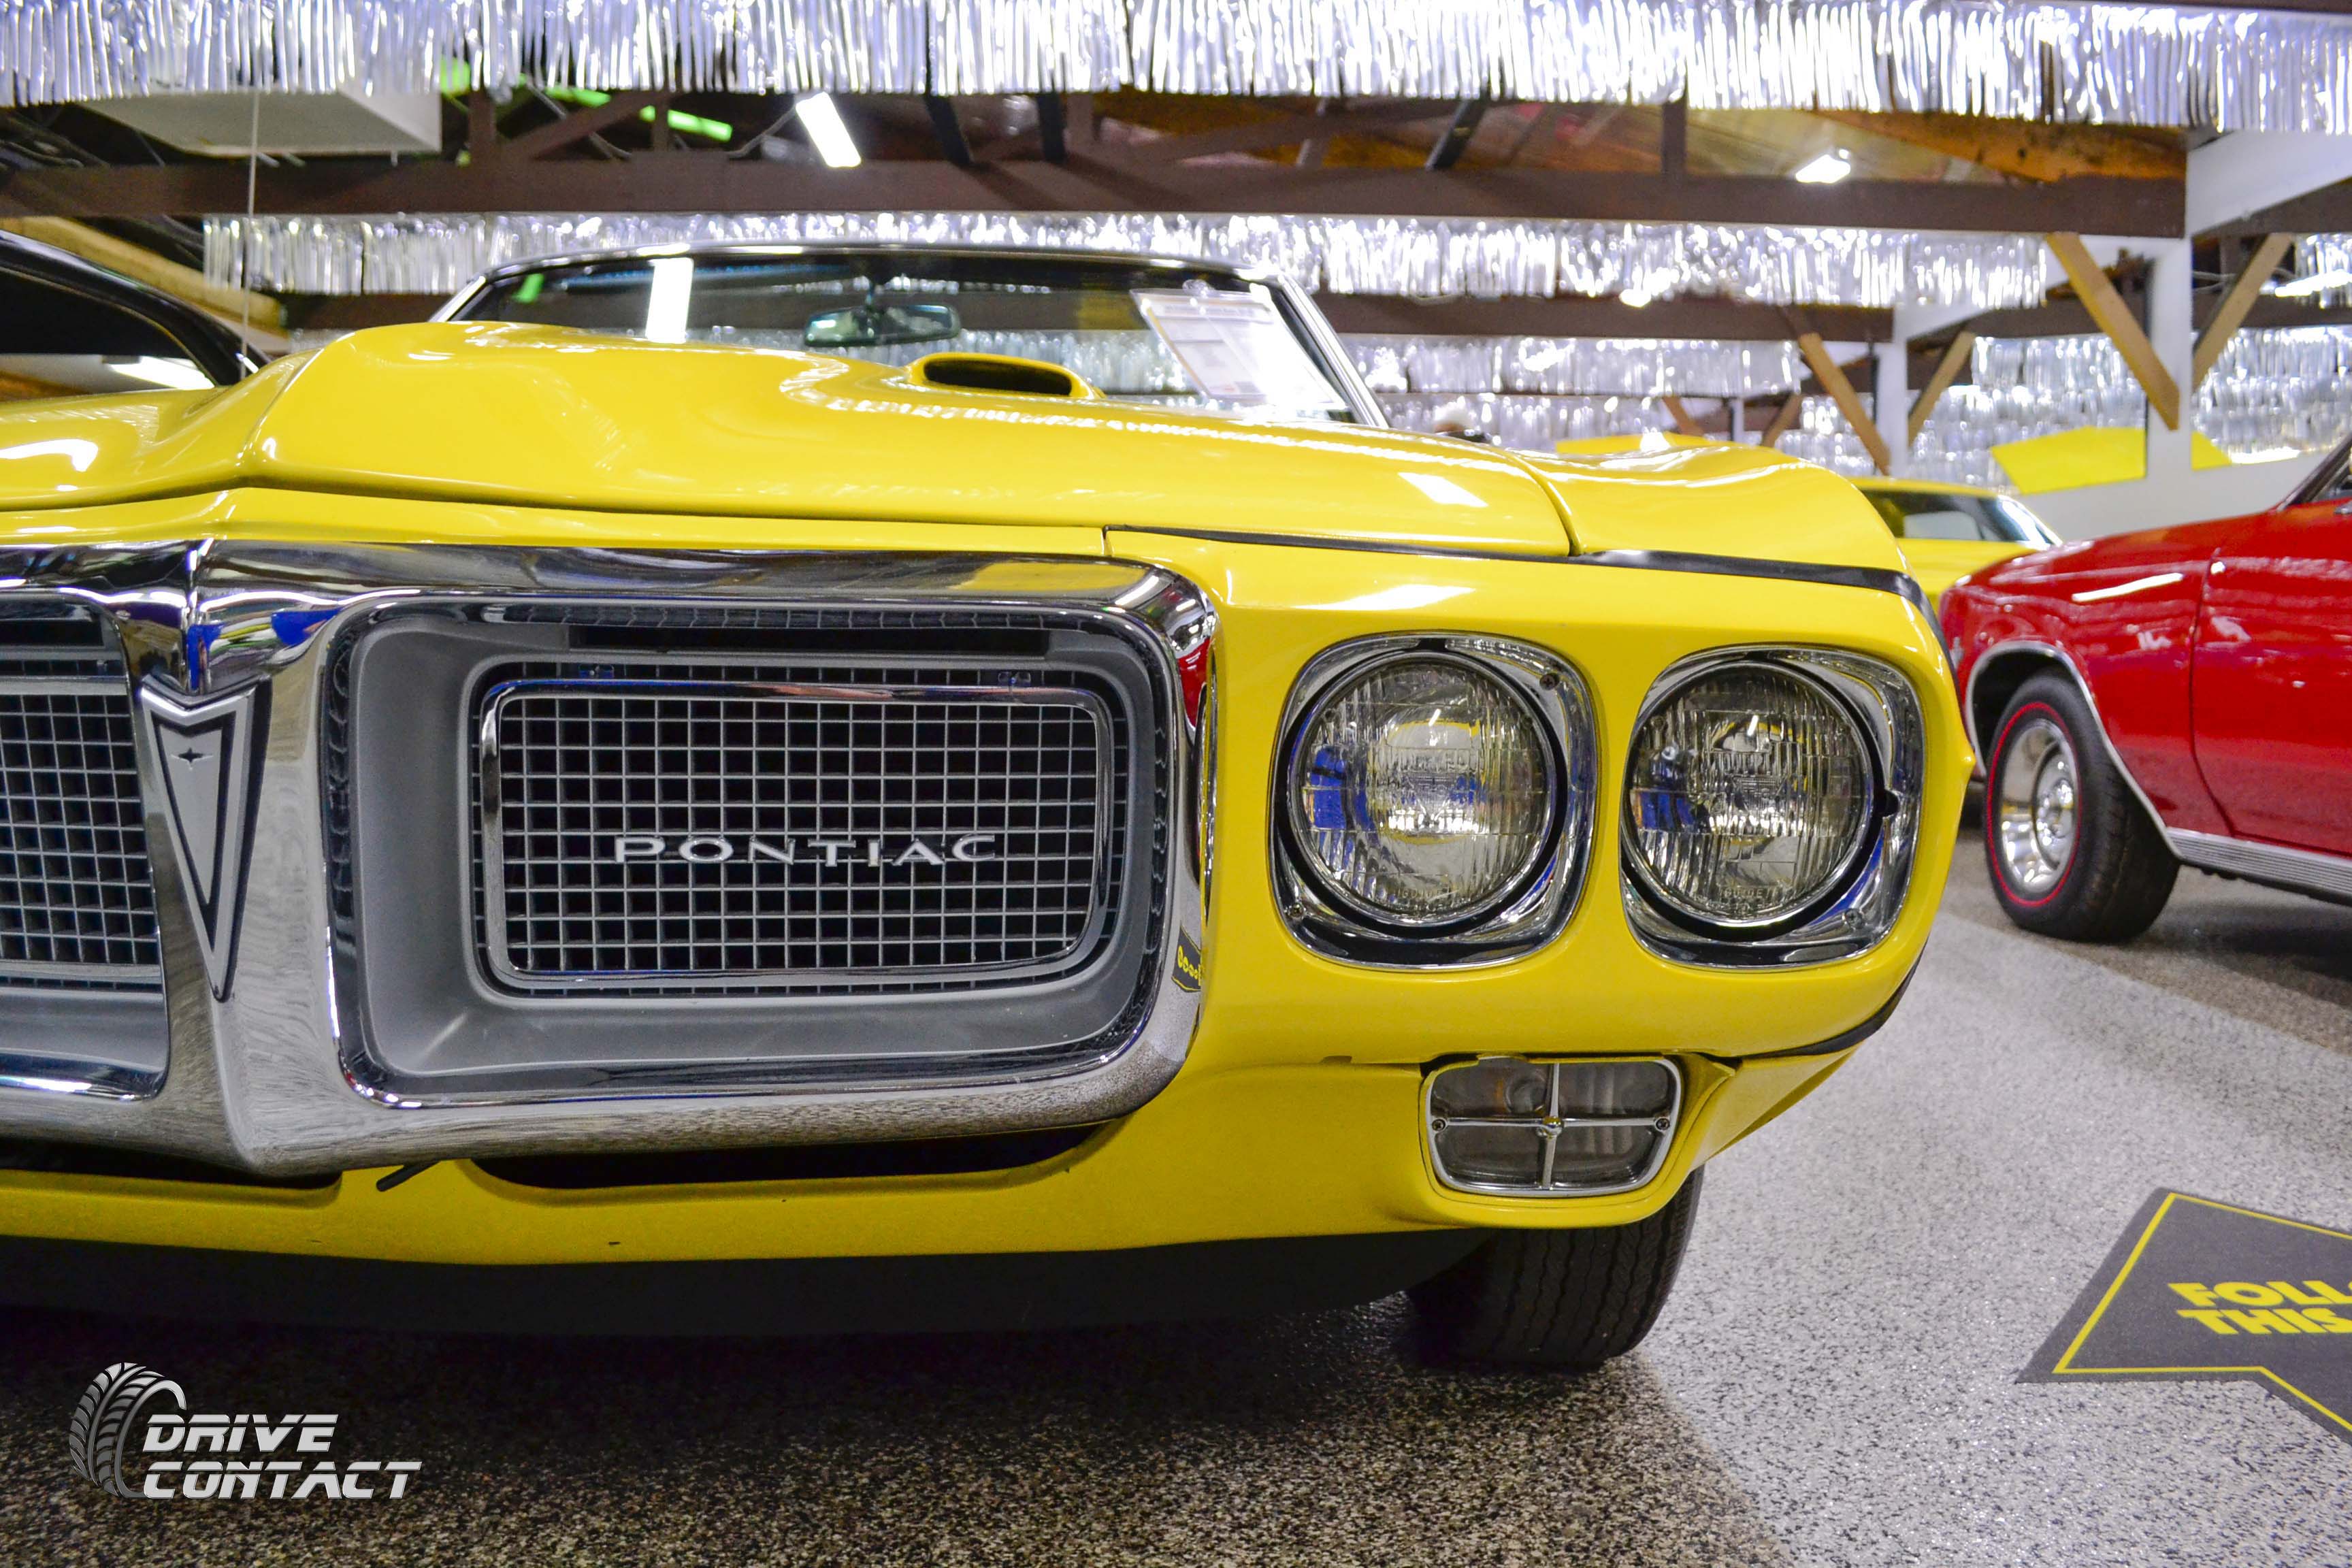 Pontiac - Volo Auto Museum